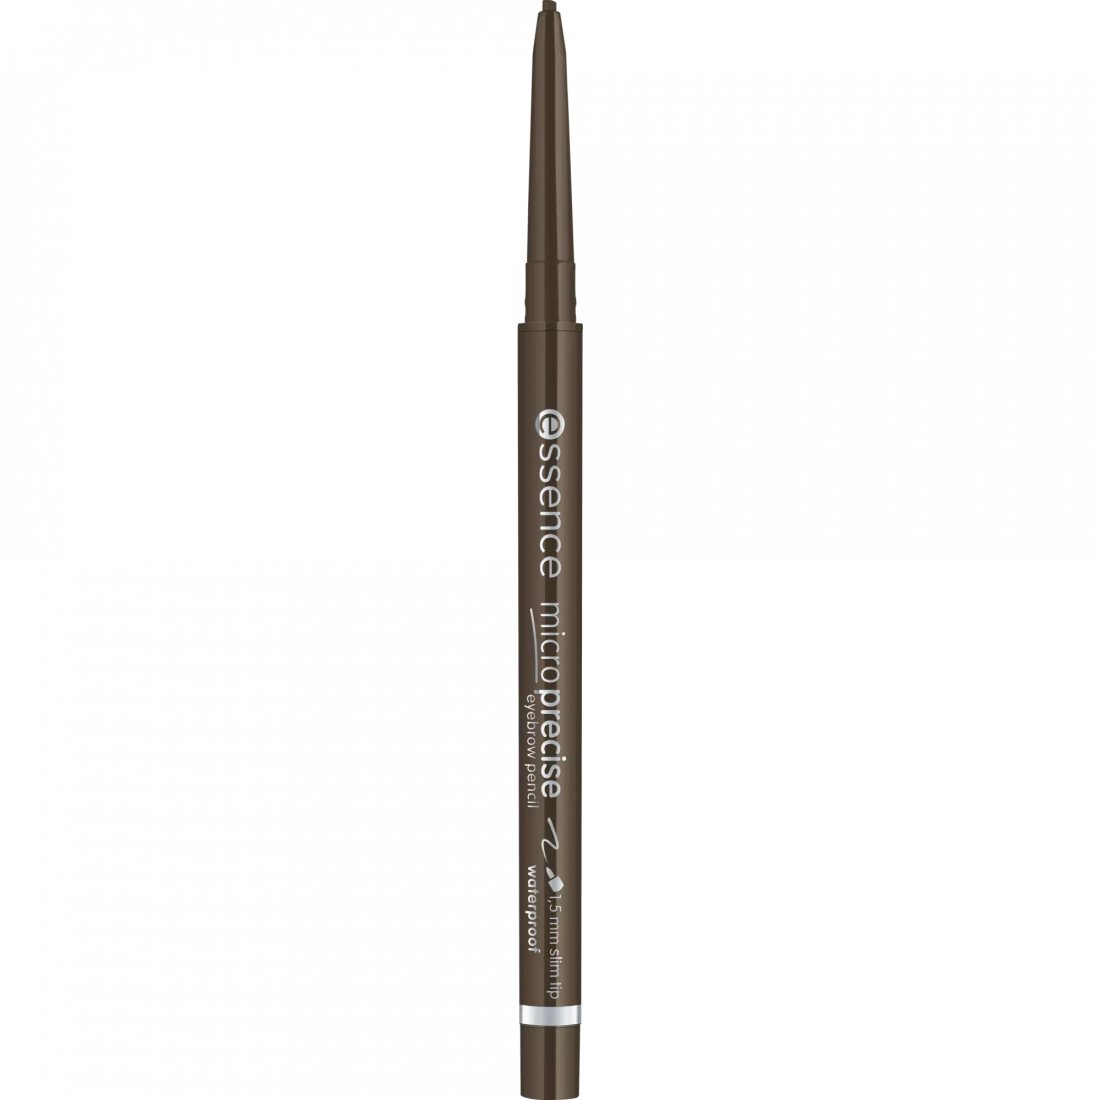 'Micro Precise' Eyebrow Pencil - 05 Black Brown 0.05 g